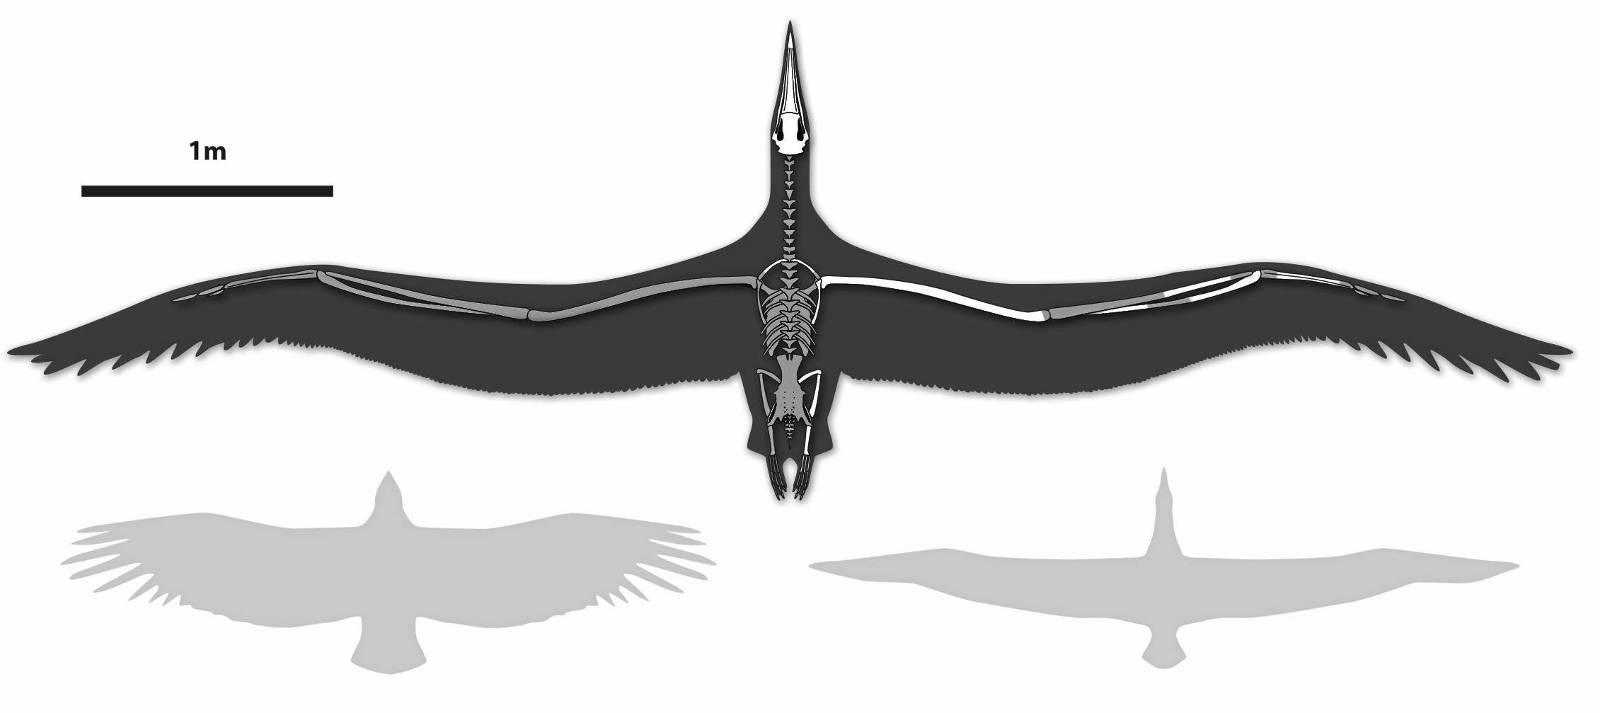 Pelagornis sandersi hadde et vingespenn på over 7 meter, dobbelt så stor som nåtidens kondor og albatross.